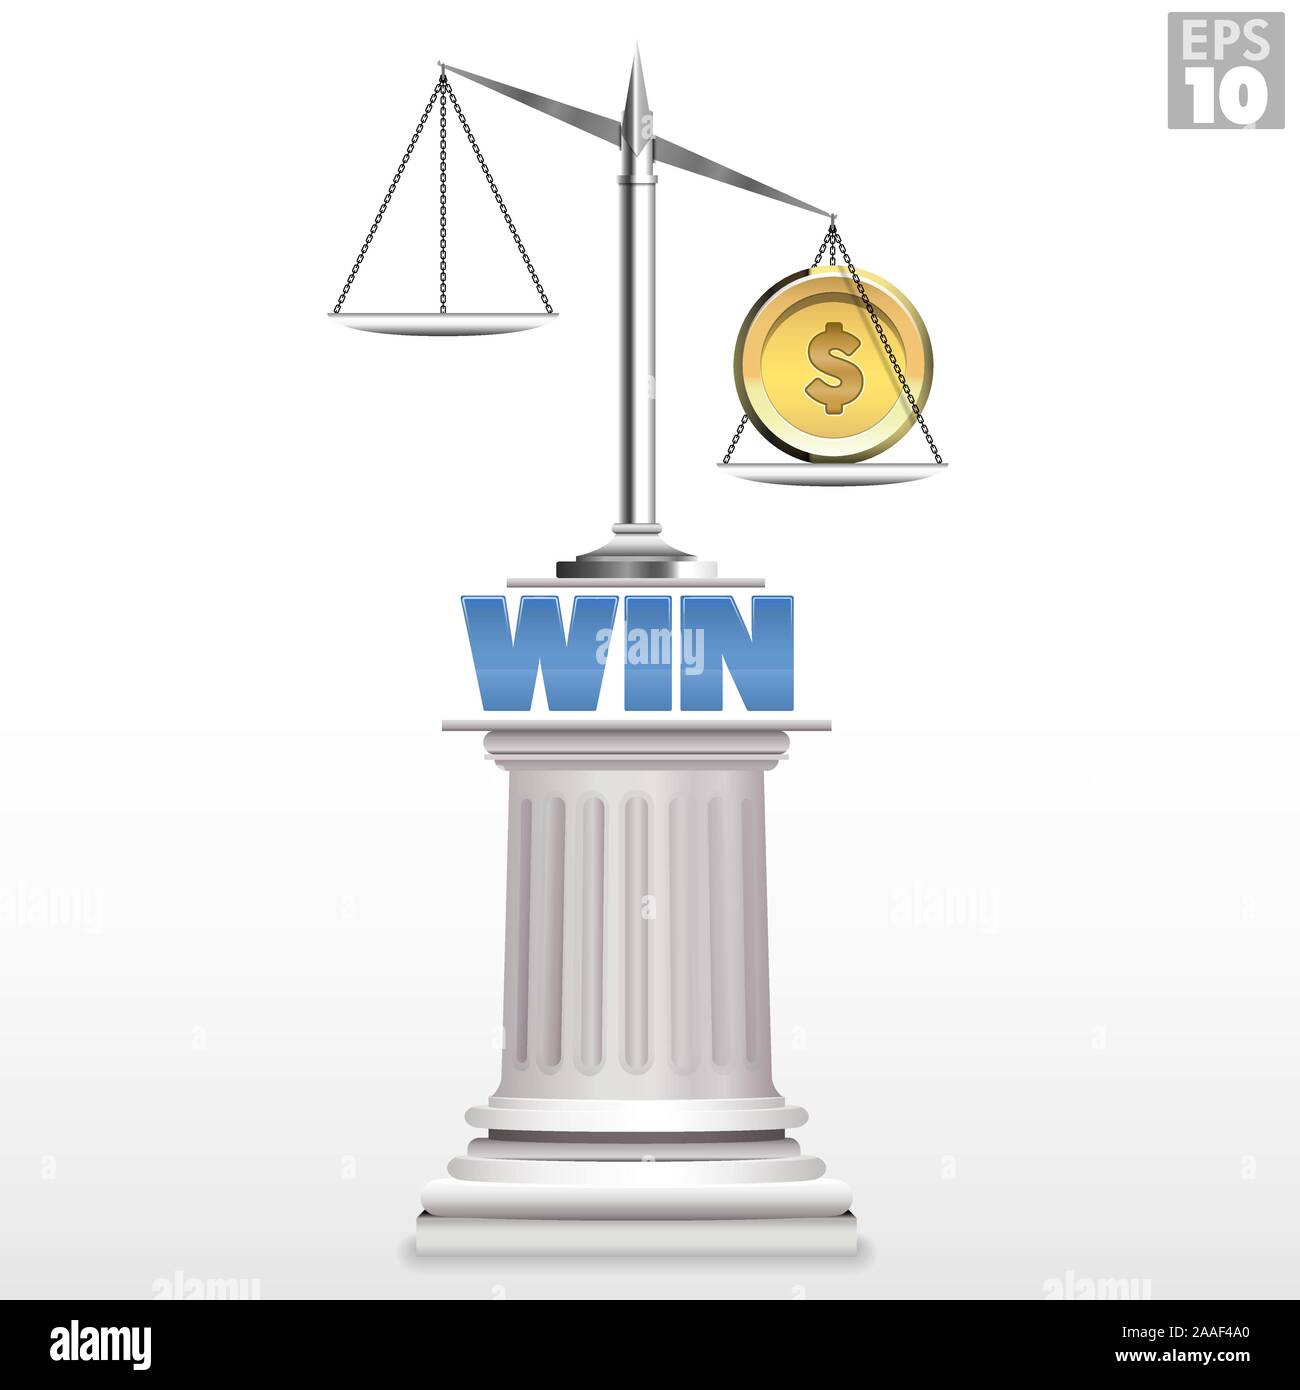 Ein schweres Gold Münze auf der Gerechtigkeit Maßstab teuer Gericht Rechtsstreit zu repräsentieren und durch das Gleichgewicht der Gerechtigkeit zu gewinnen. Stock Vektor